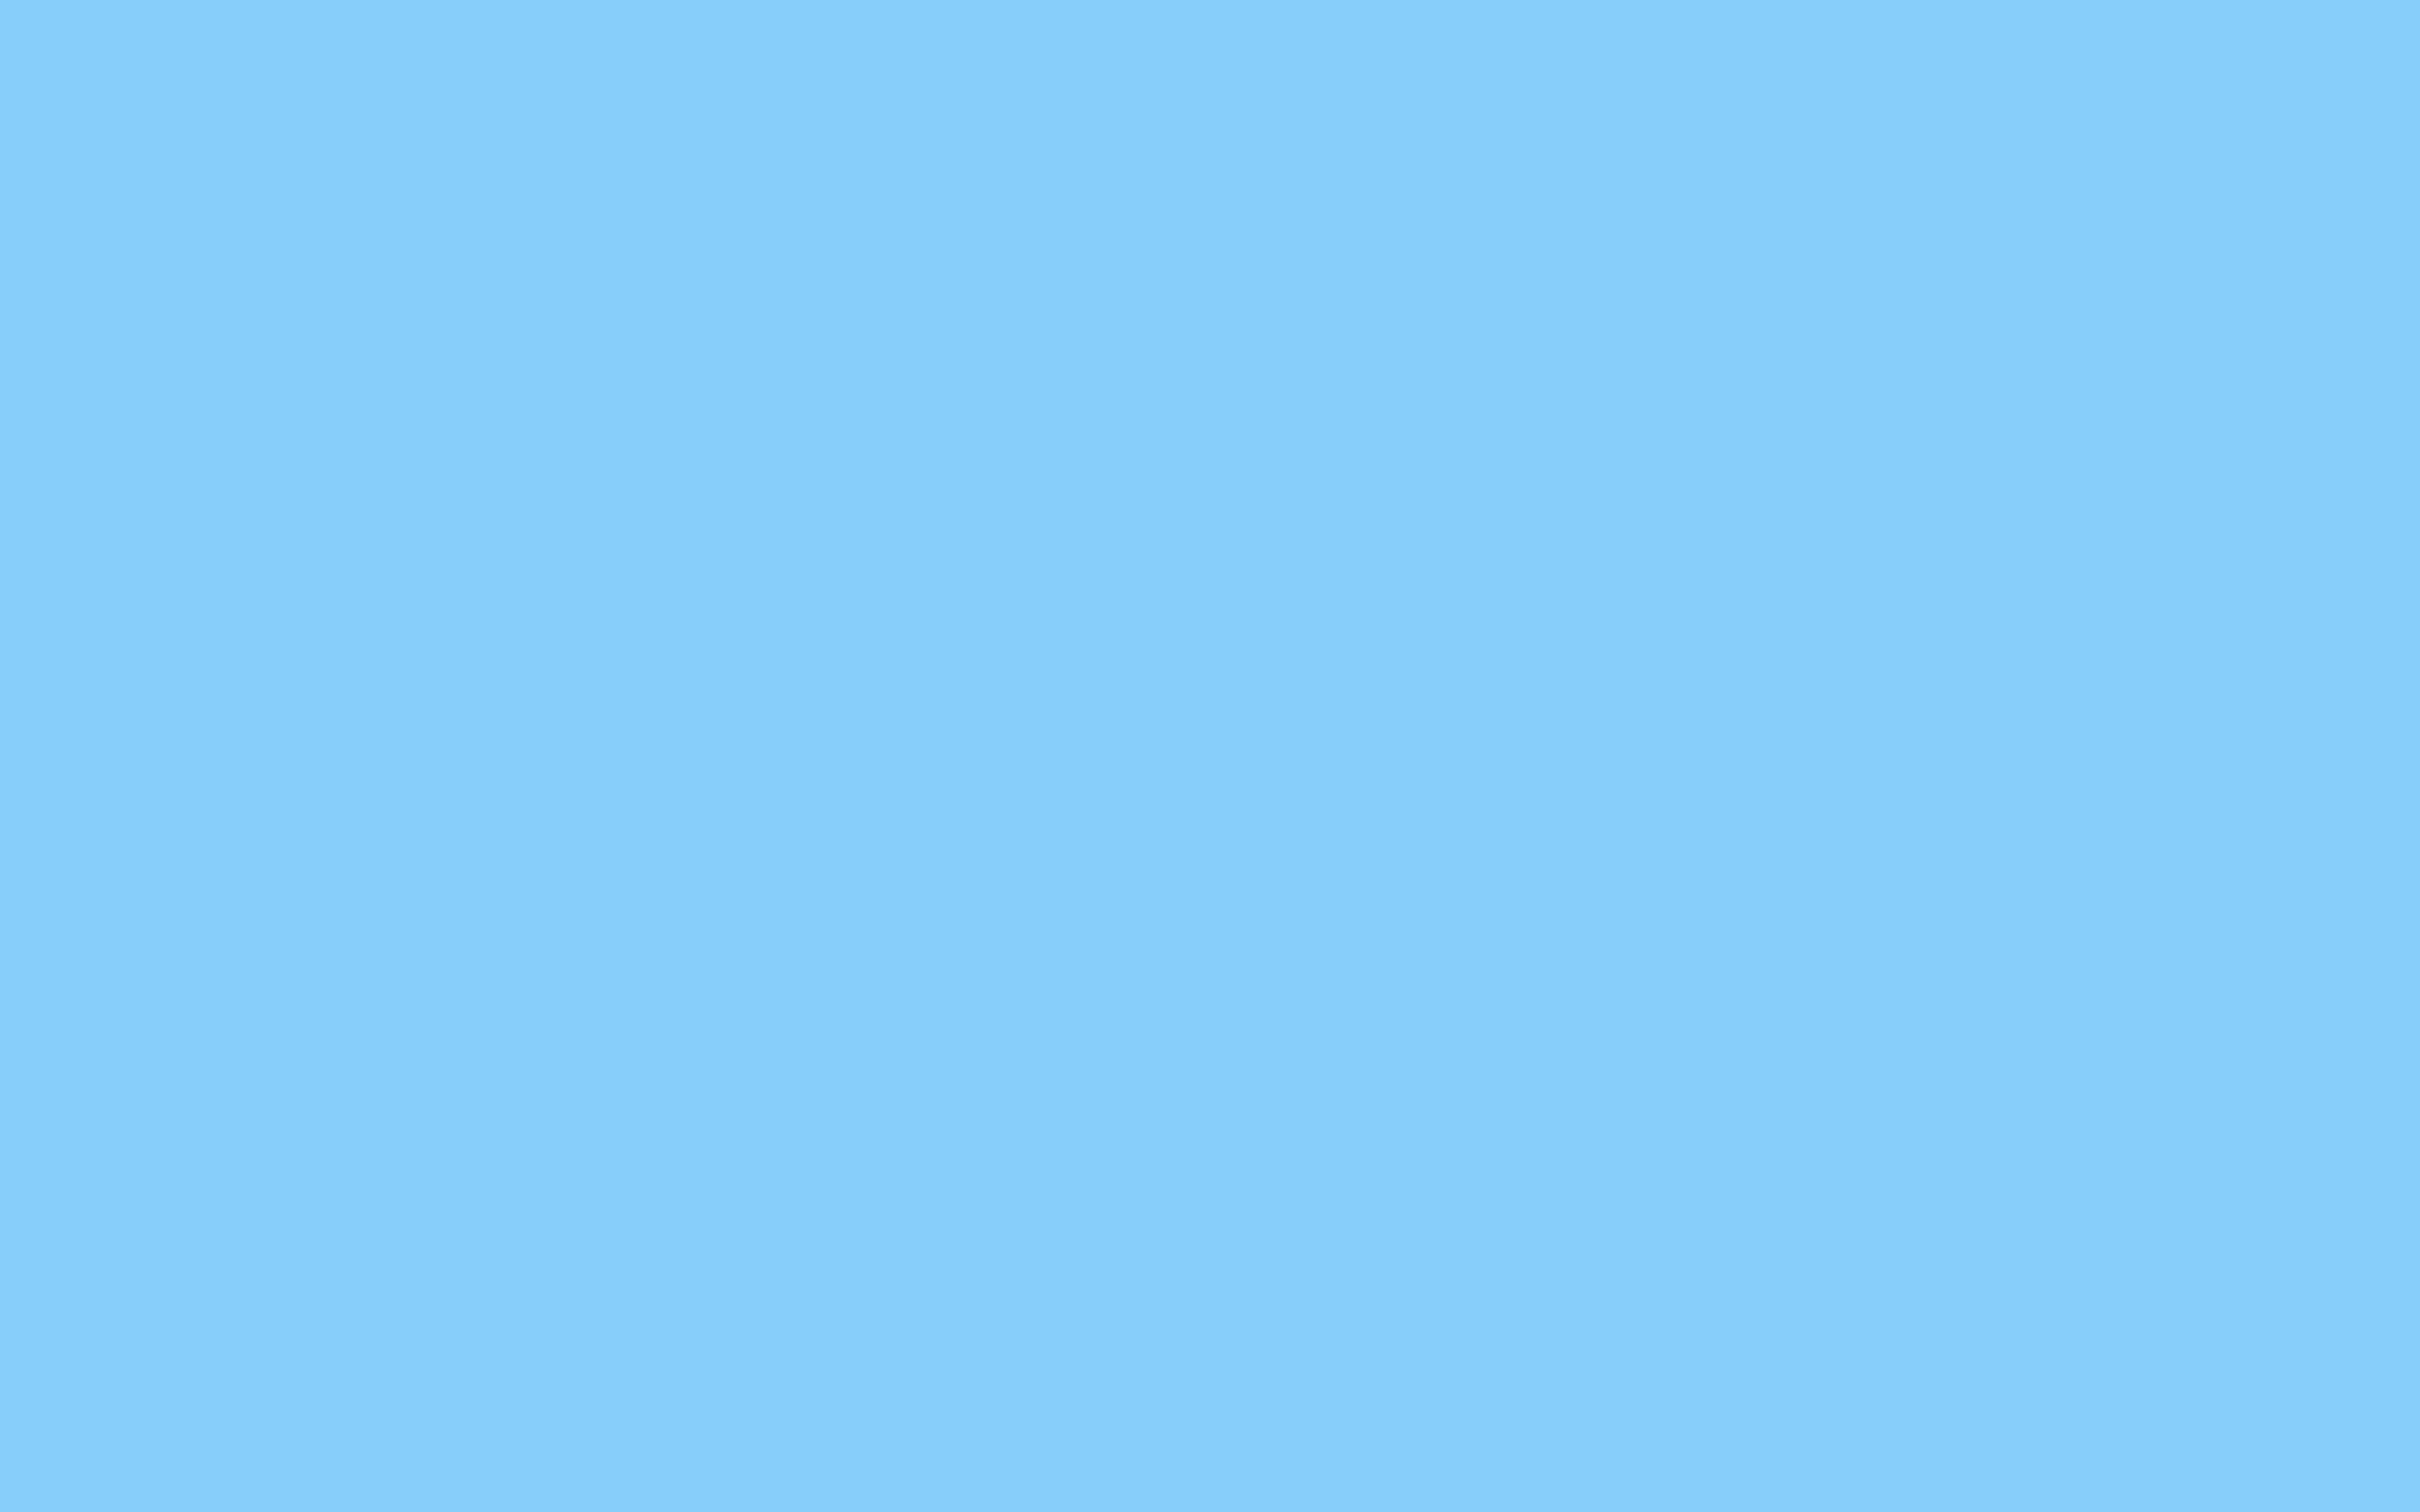 Light Blue Background Wallpaper 2880x1800 6339